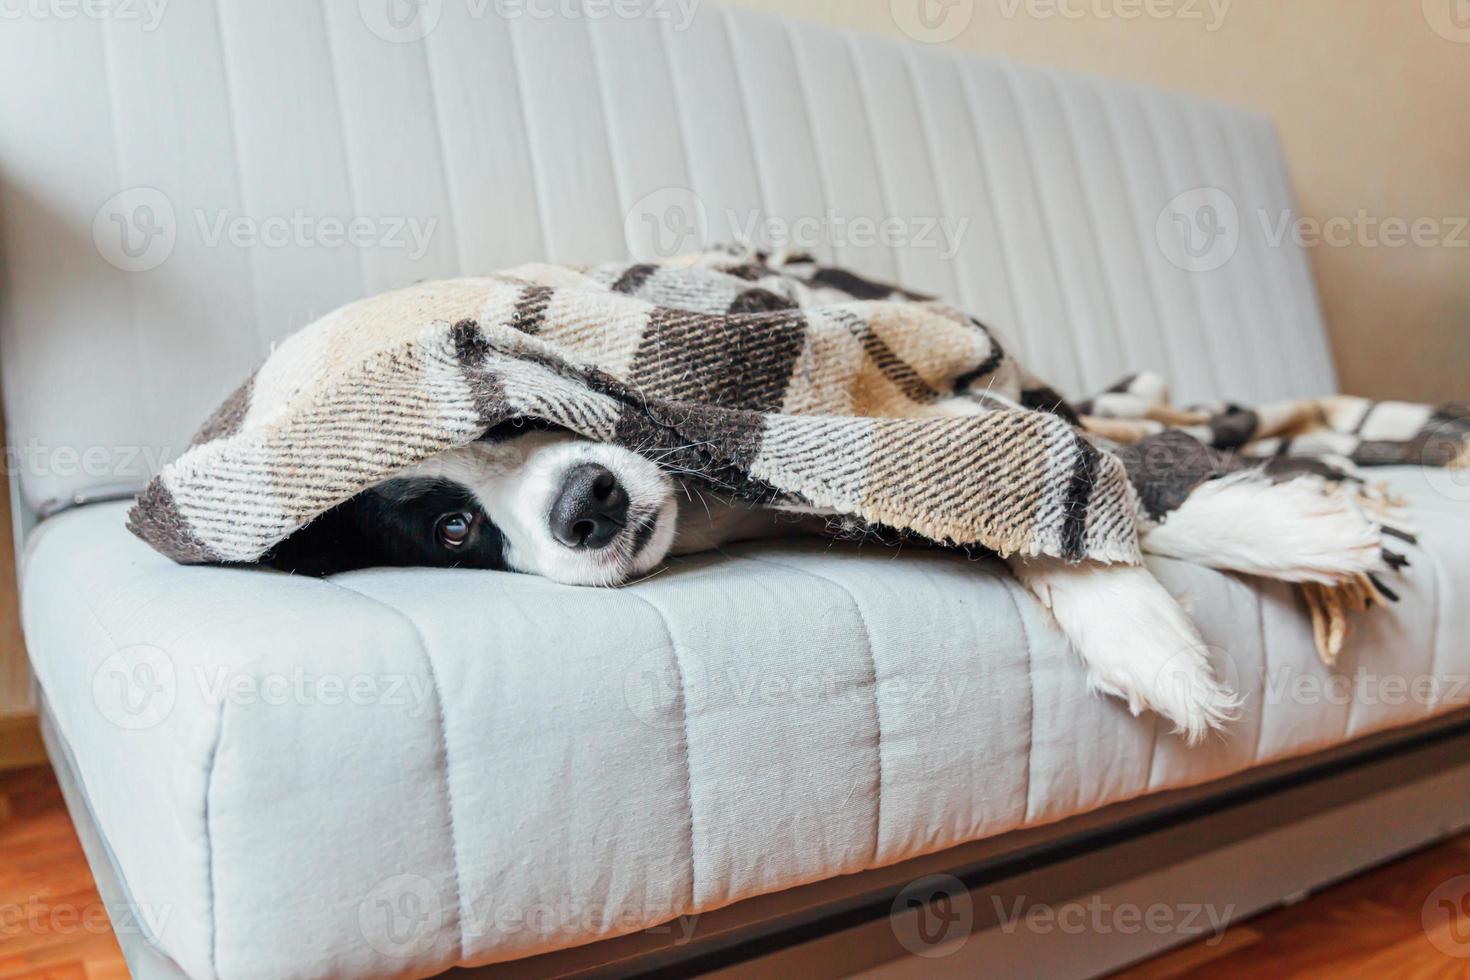 rolig valp hund gräns collie liggande på soffa under pläd inomhus. härlig medlem av familj liten hund på Hem uppvärmningen under filt i kall falla höst vinter- väder. sällskapsdjur djur- liv begrepp. foto